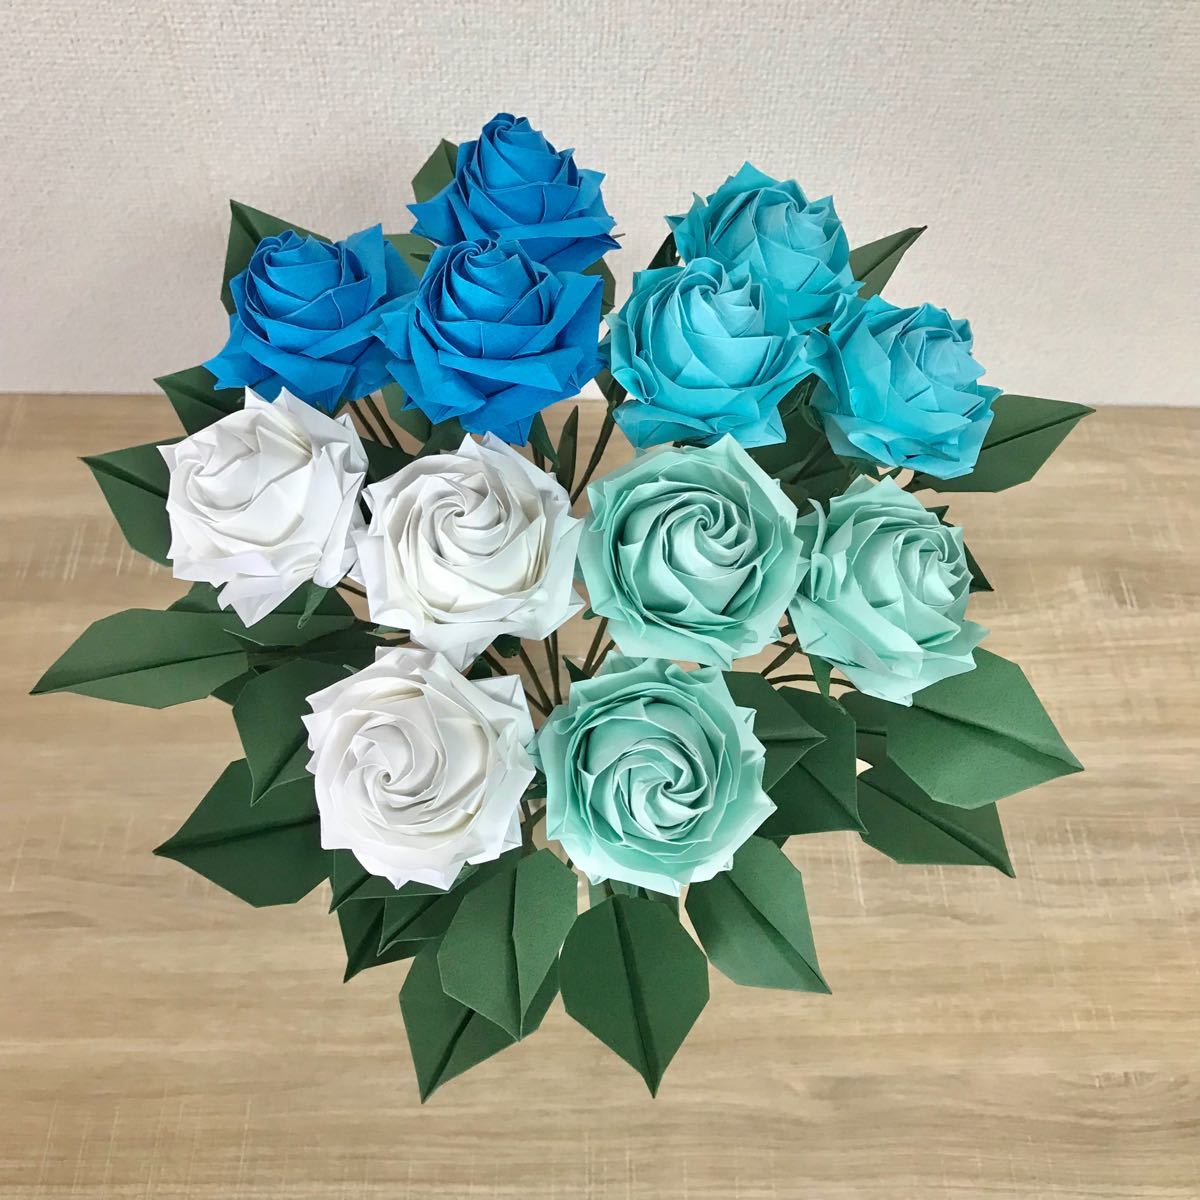 Paypayフリマ オーダーメイド承ります 折り紙のバラ花束 ブルー系12本セット ダズンローズ スワッグ ブーケ フラワーアレンジメント